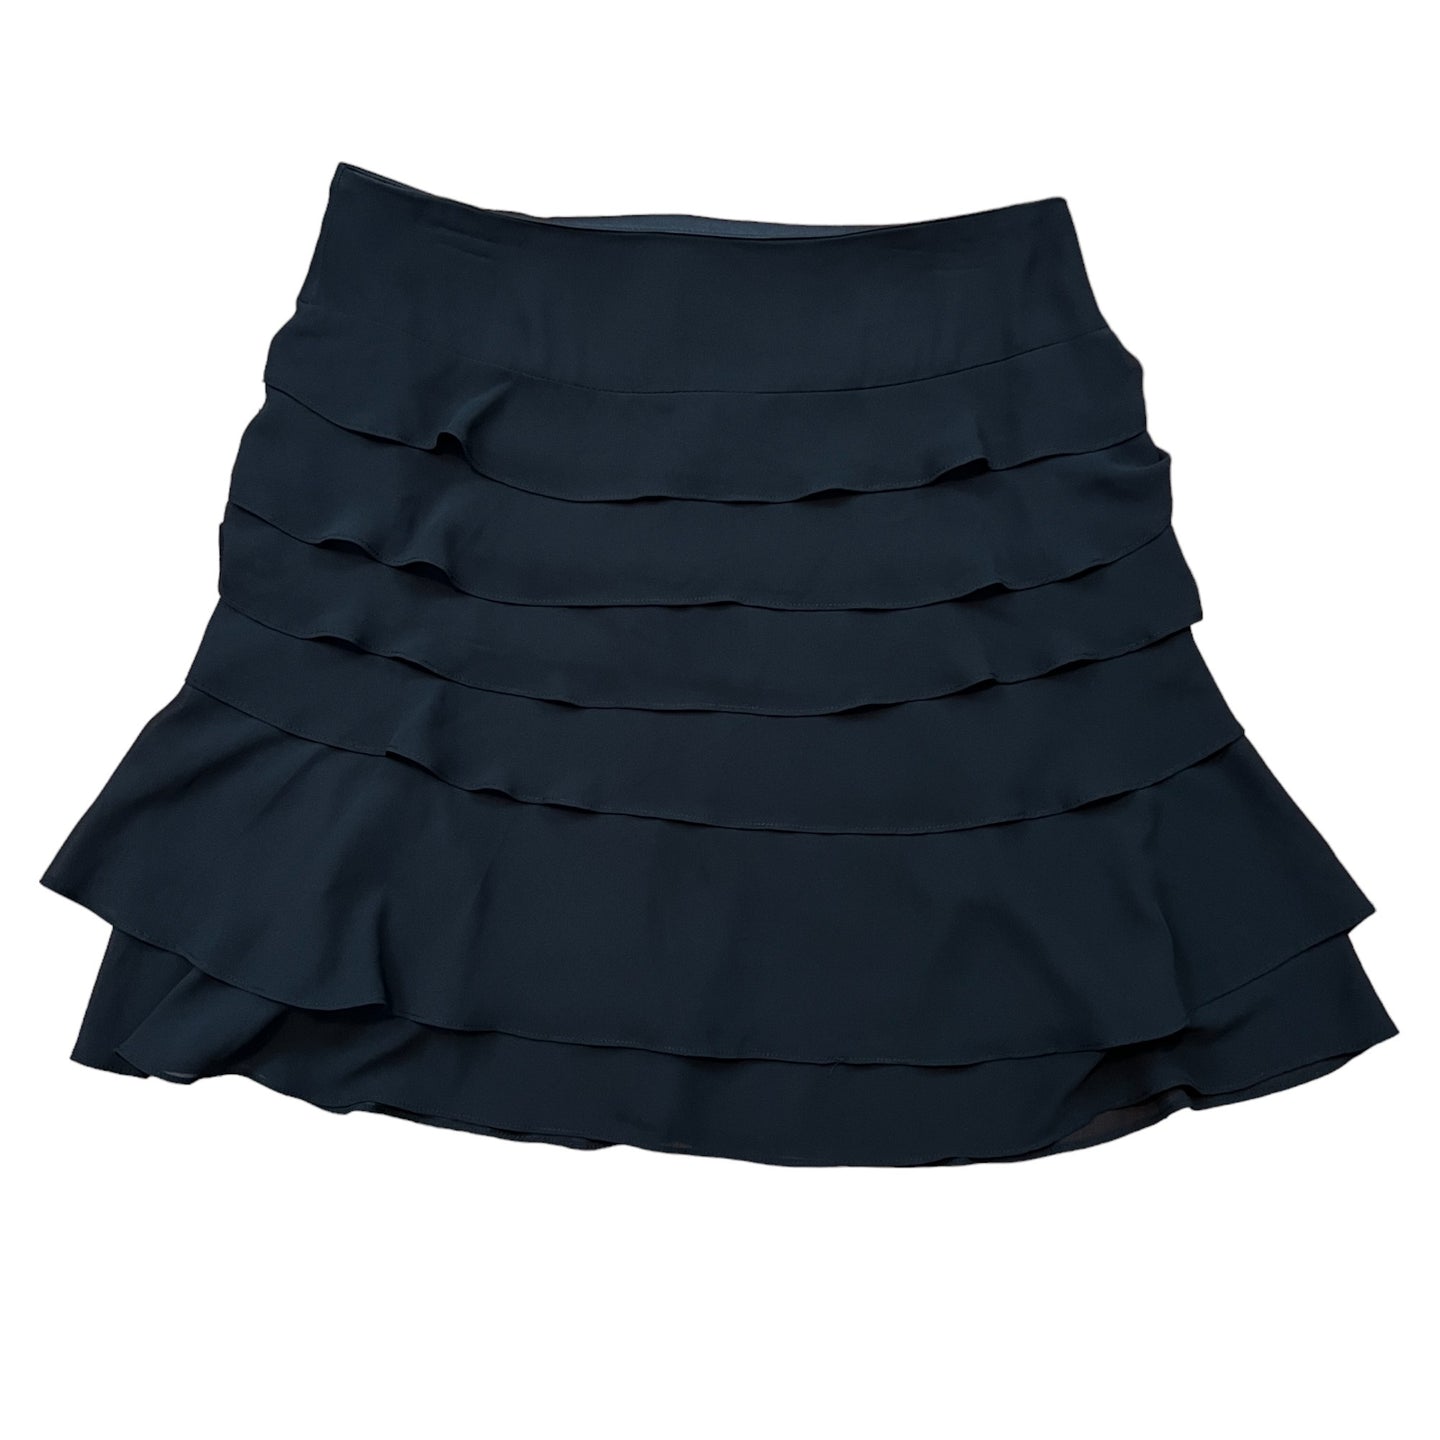 Black Chiffon Ruffle Skirt Size 10